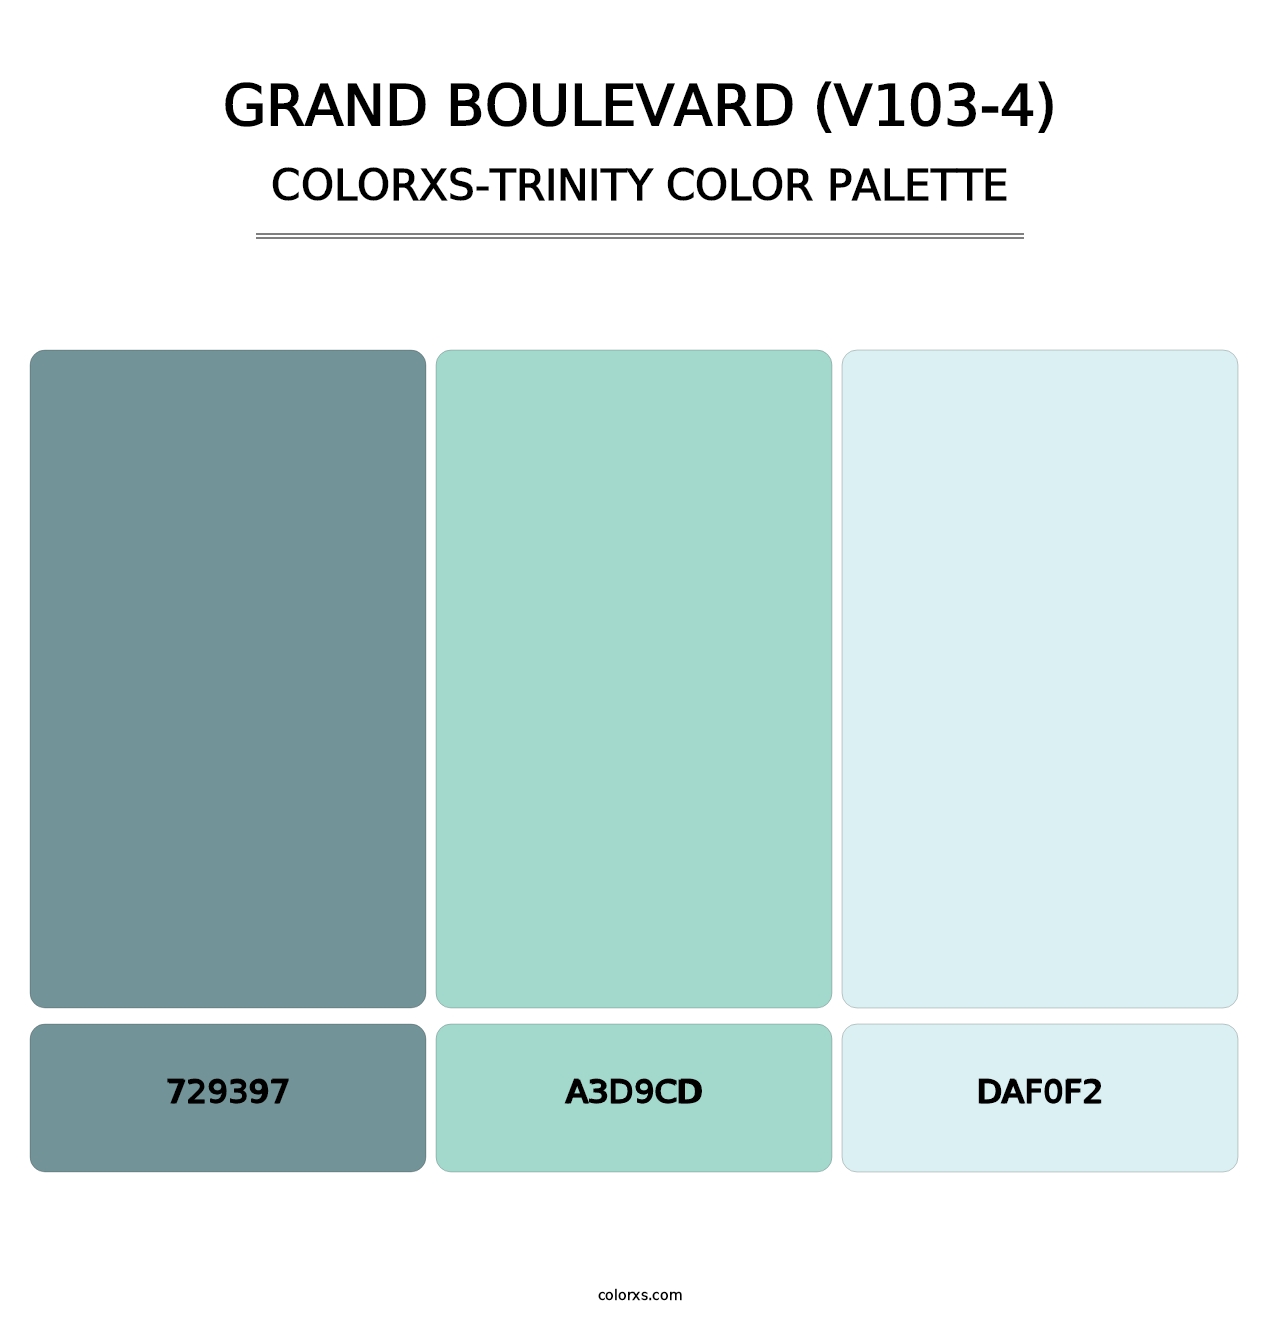 Grand Boulevard (V103-4) - Colorxs Trinity Palette